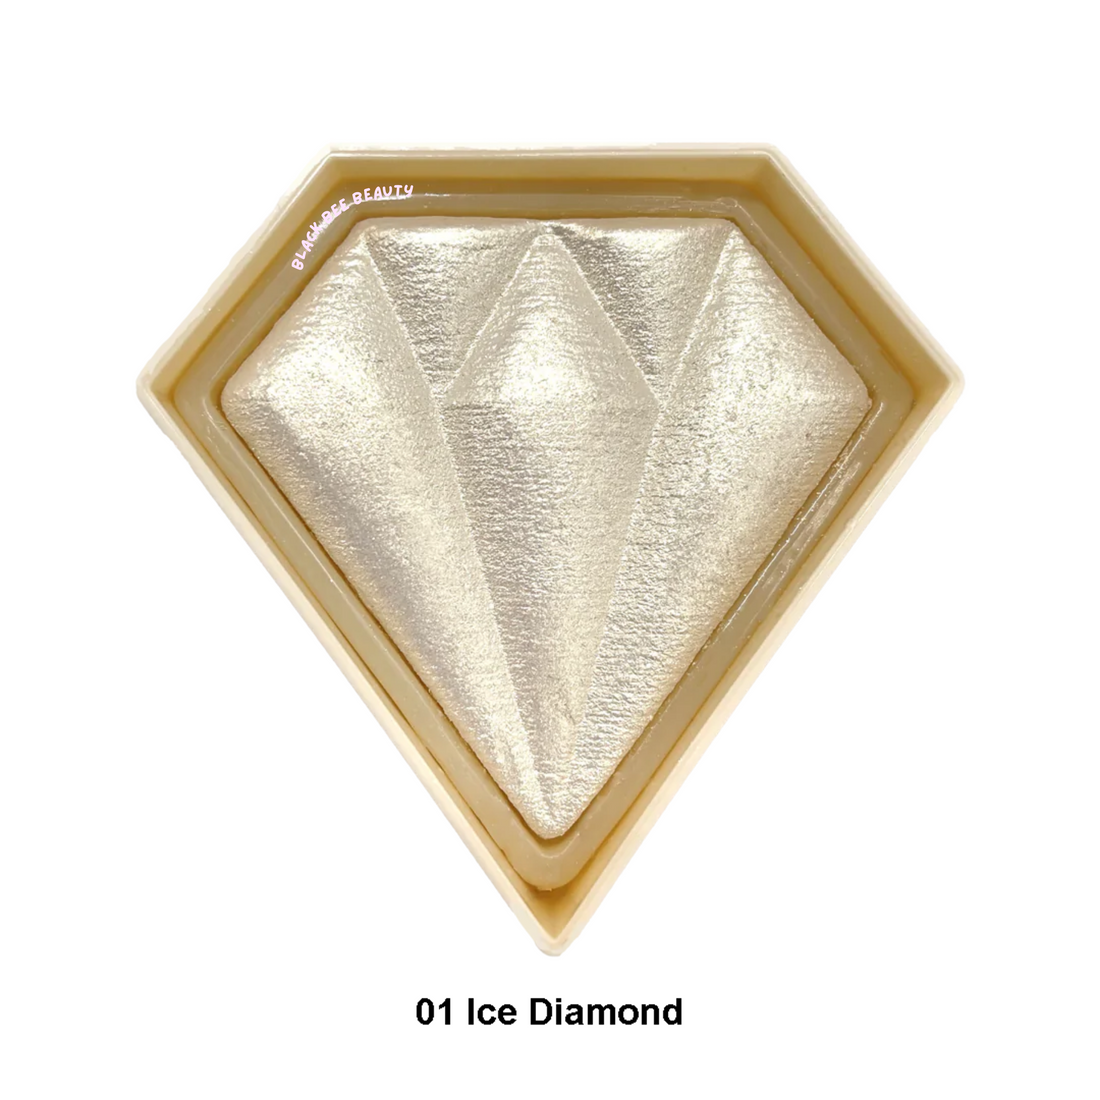 DIAMOND GLOW